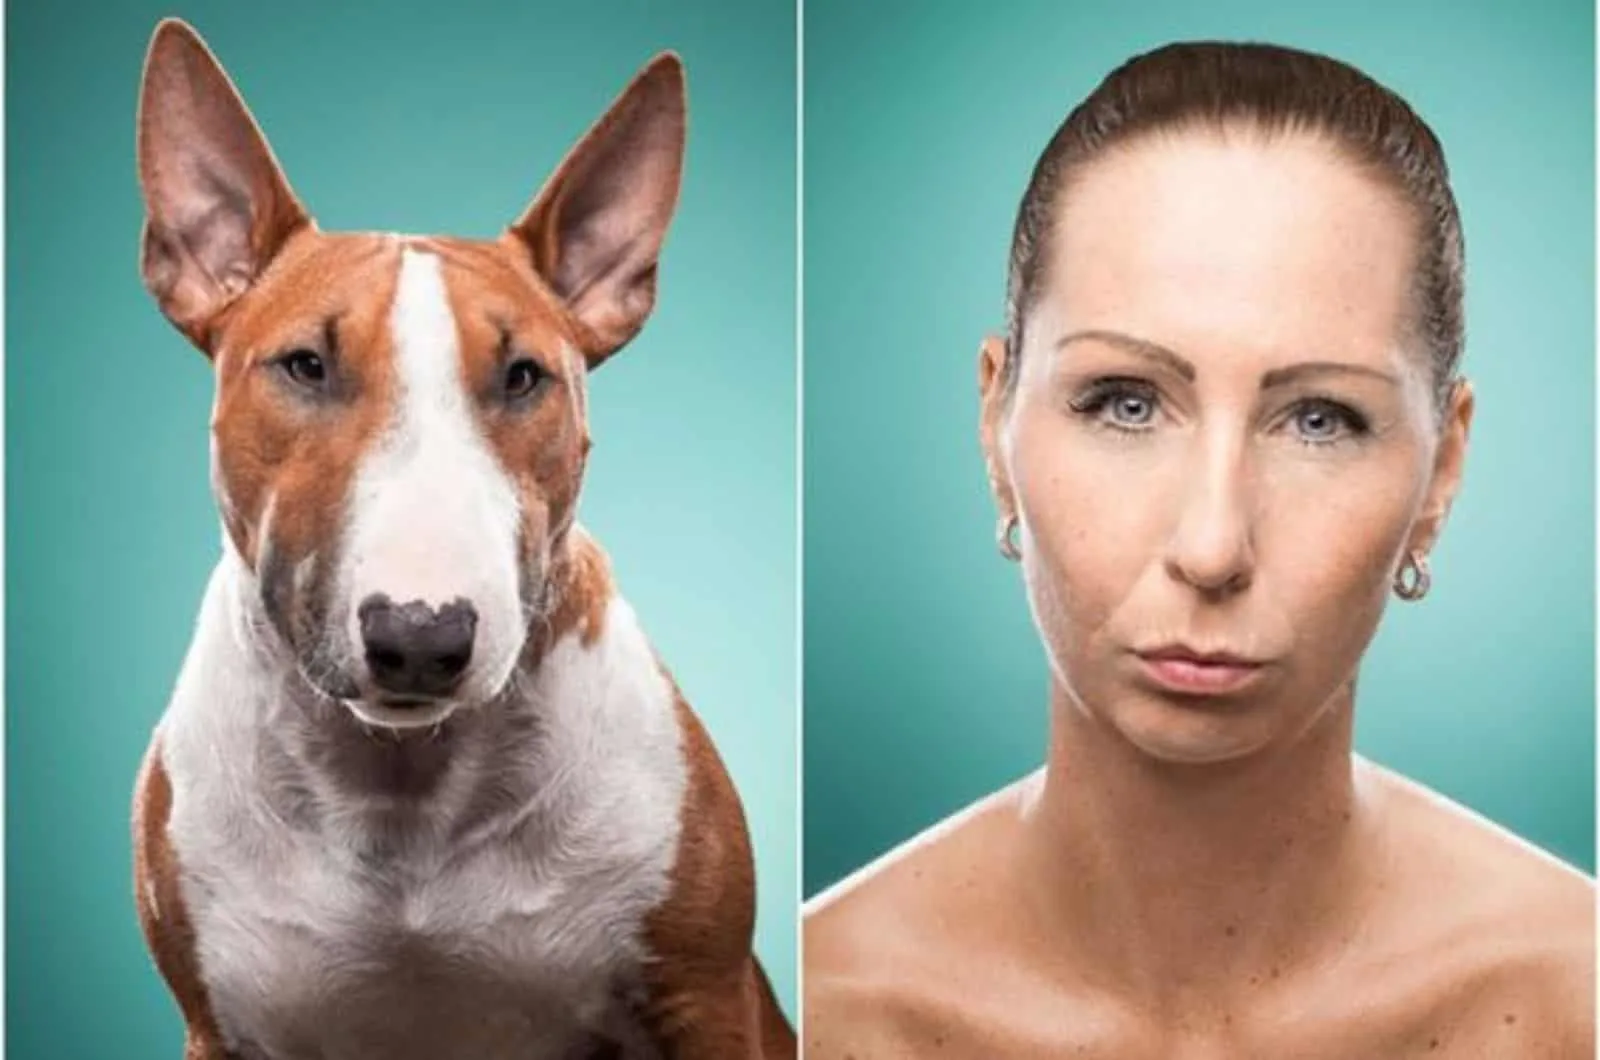 woman and dog looking similar